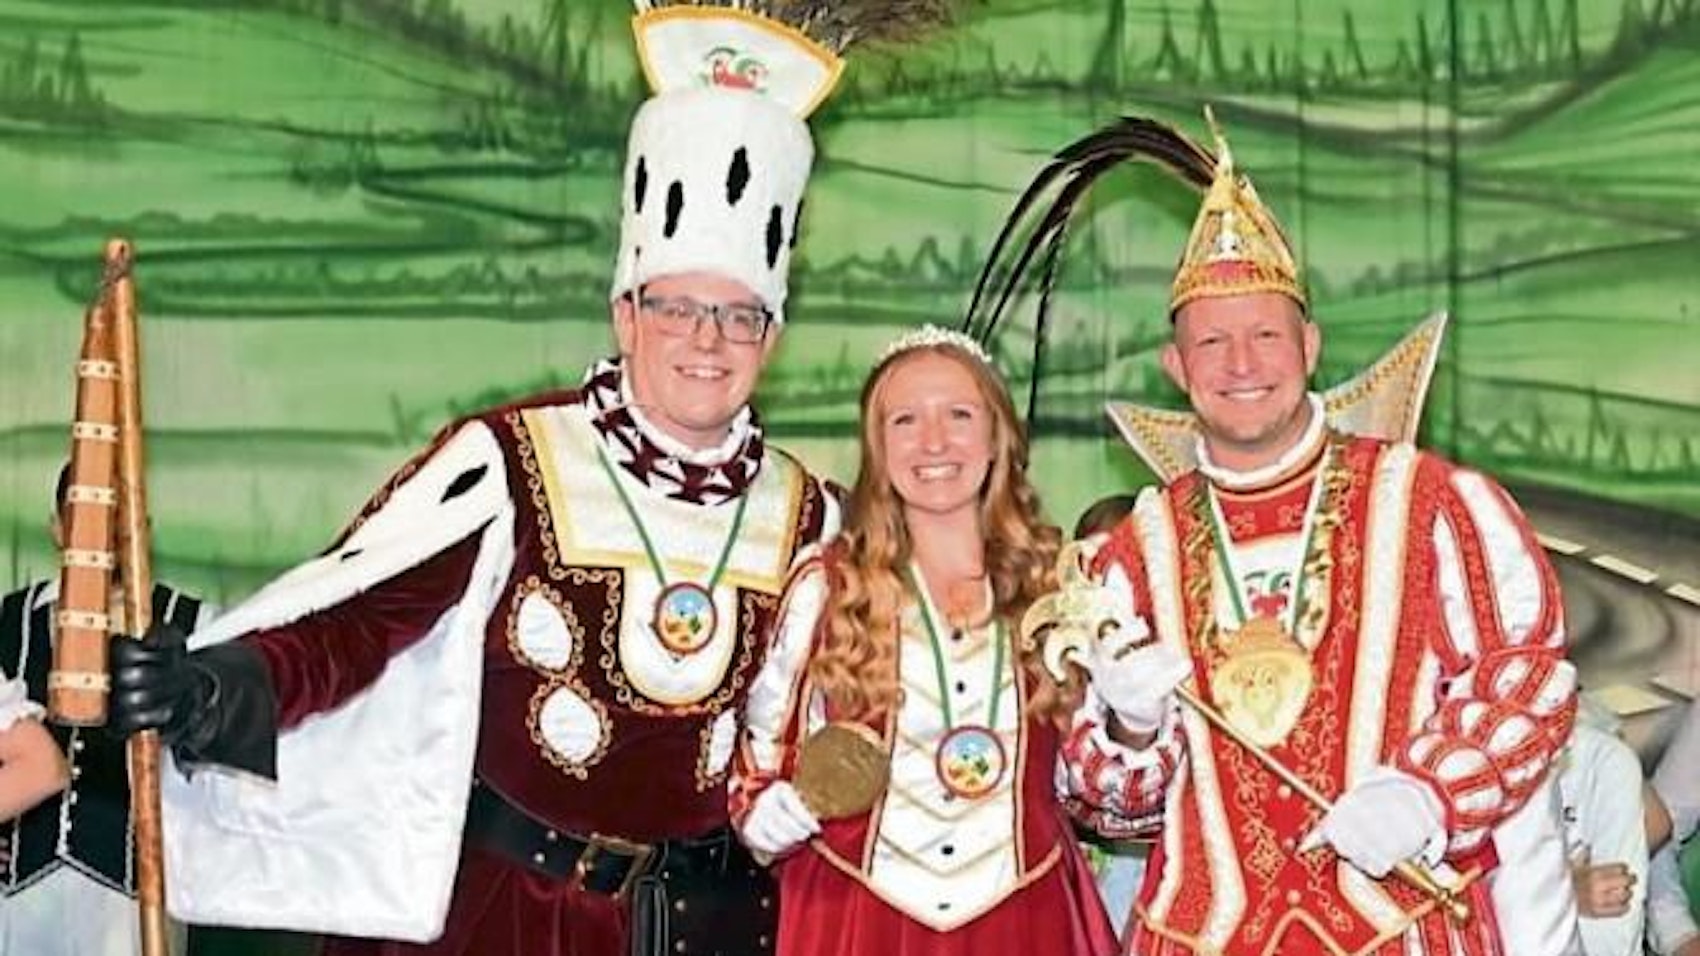 Frisch proklamiert: Prinz Thomas I. (Dürrenberg/r.), Bauer Norman (Dienslaken) und Jungfrau Maine (Keller) in ihren Kostümen und mit ihren Insignien.